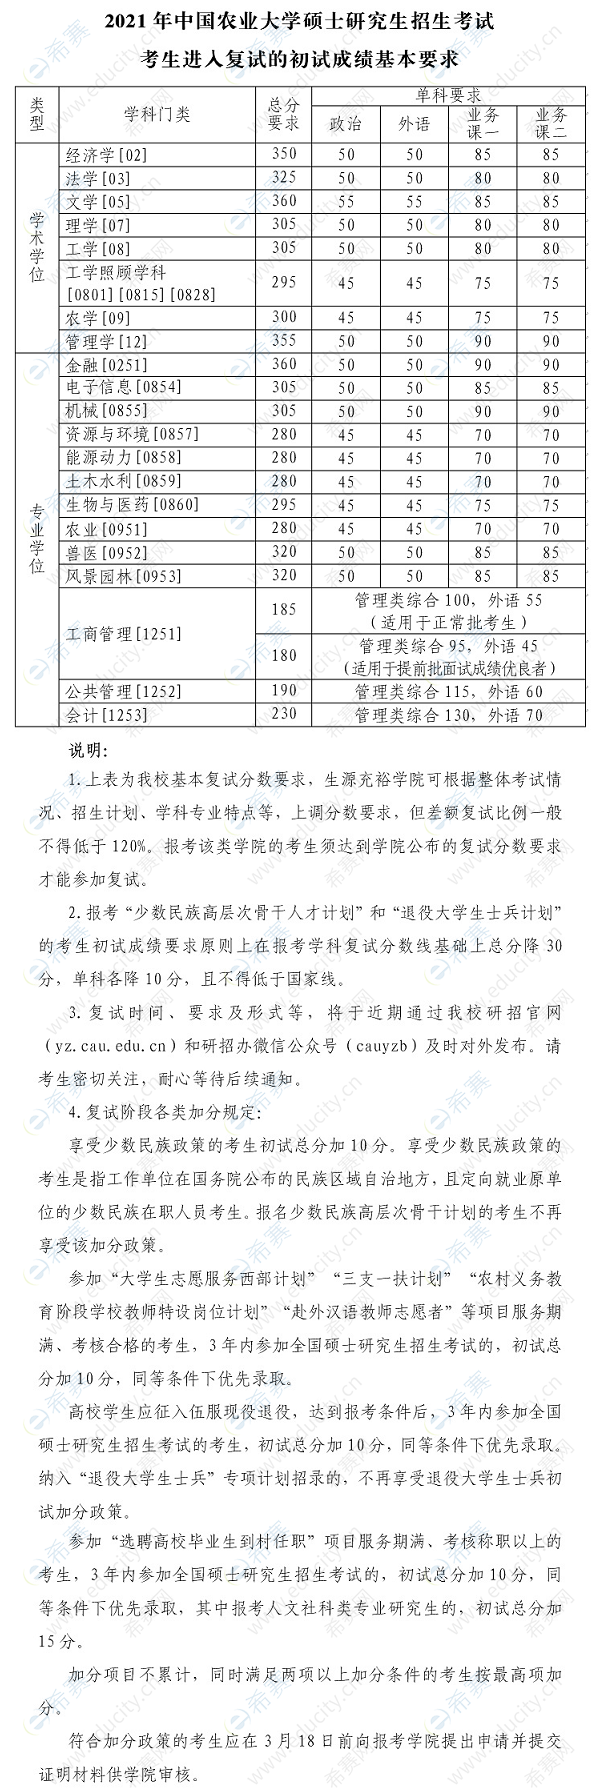 中国农业大学考研分数线.png